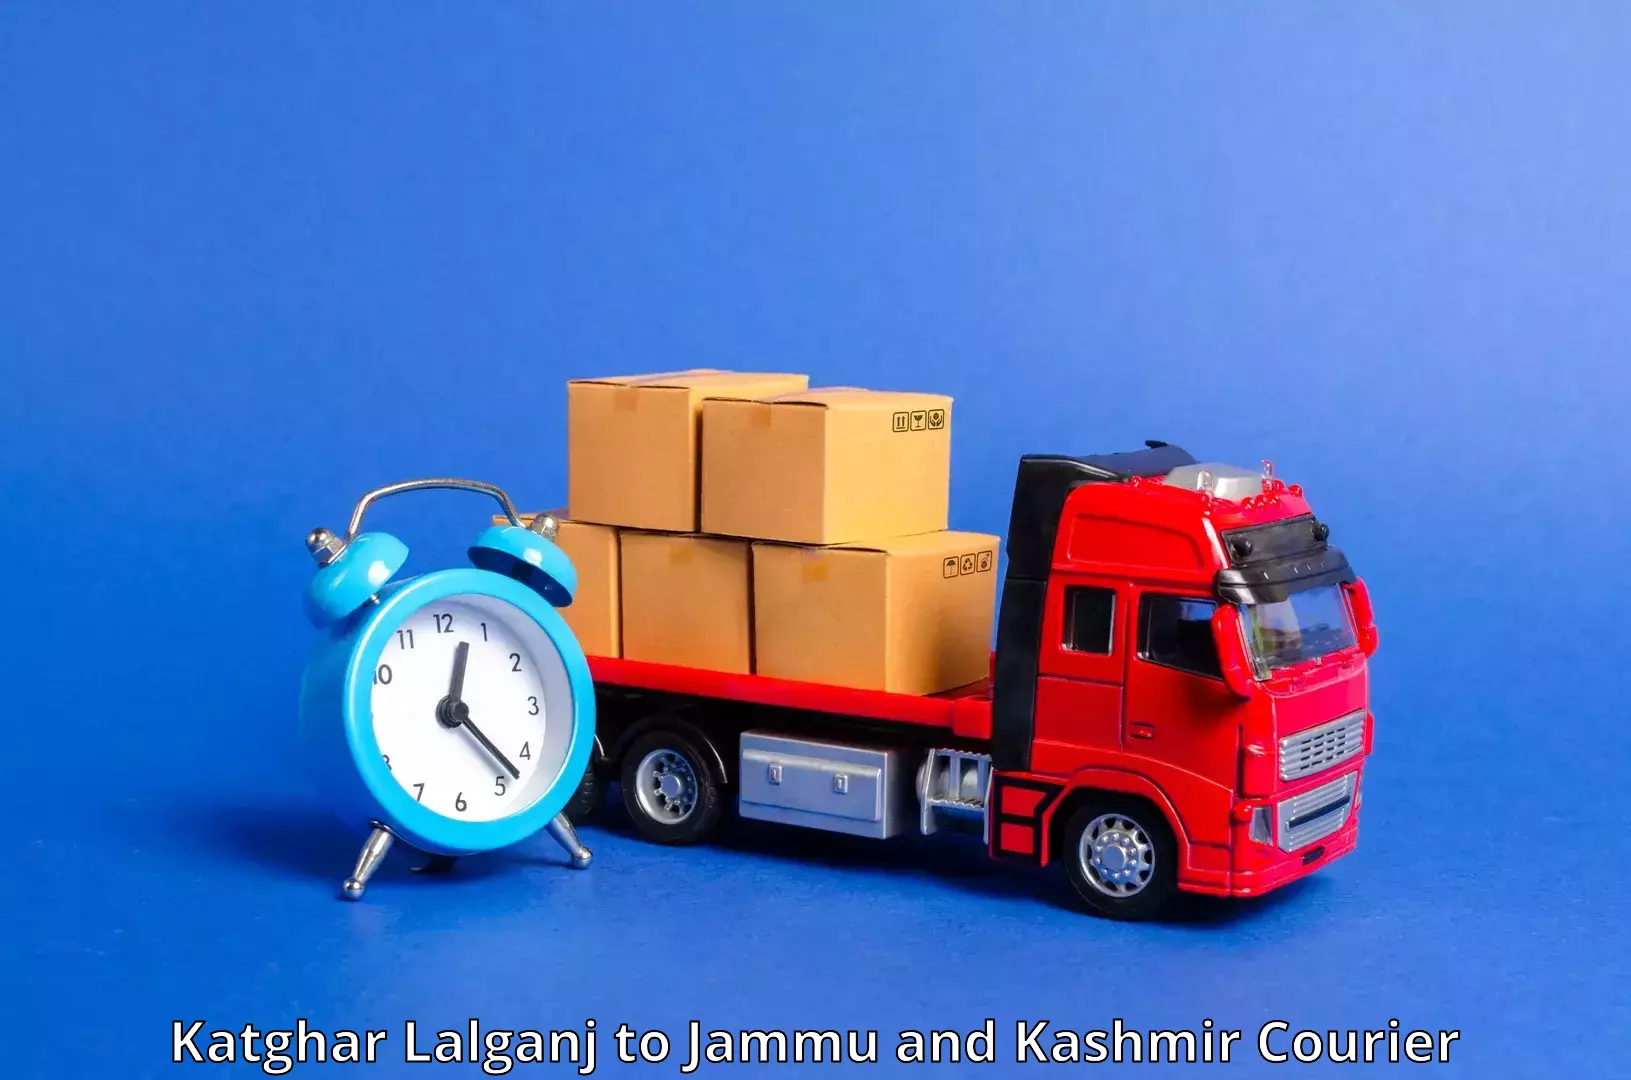 Comprehensive parcel tracking Katghar Lalganj to Anantnag